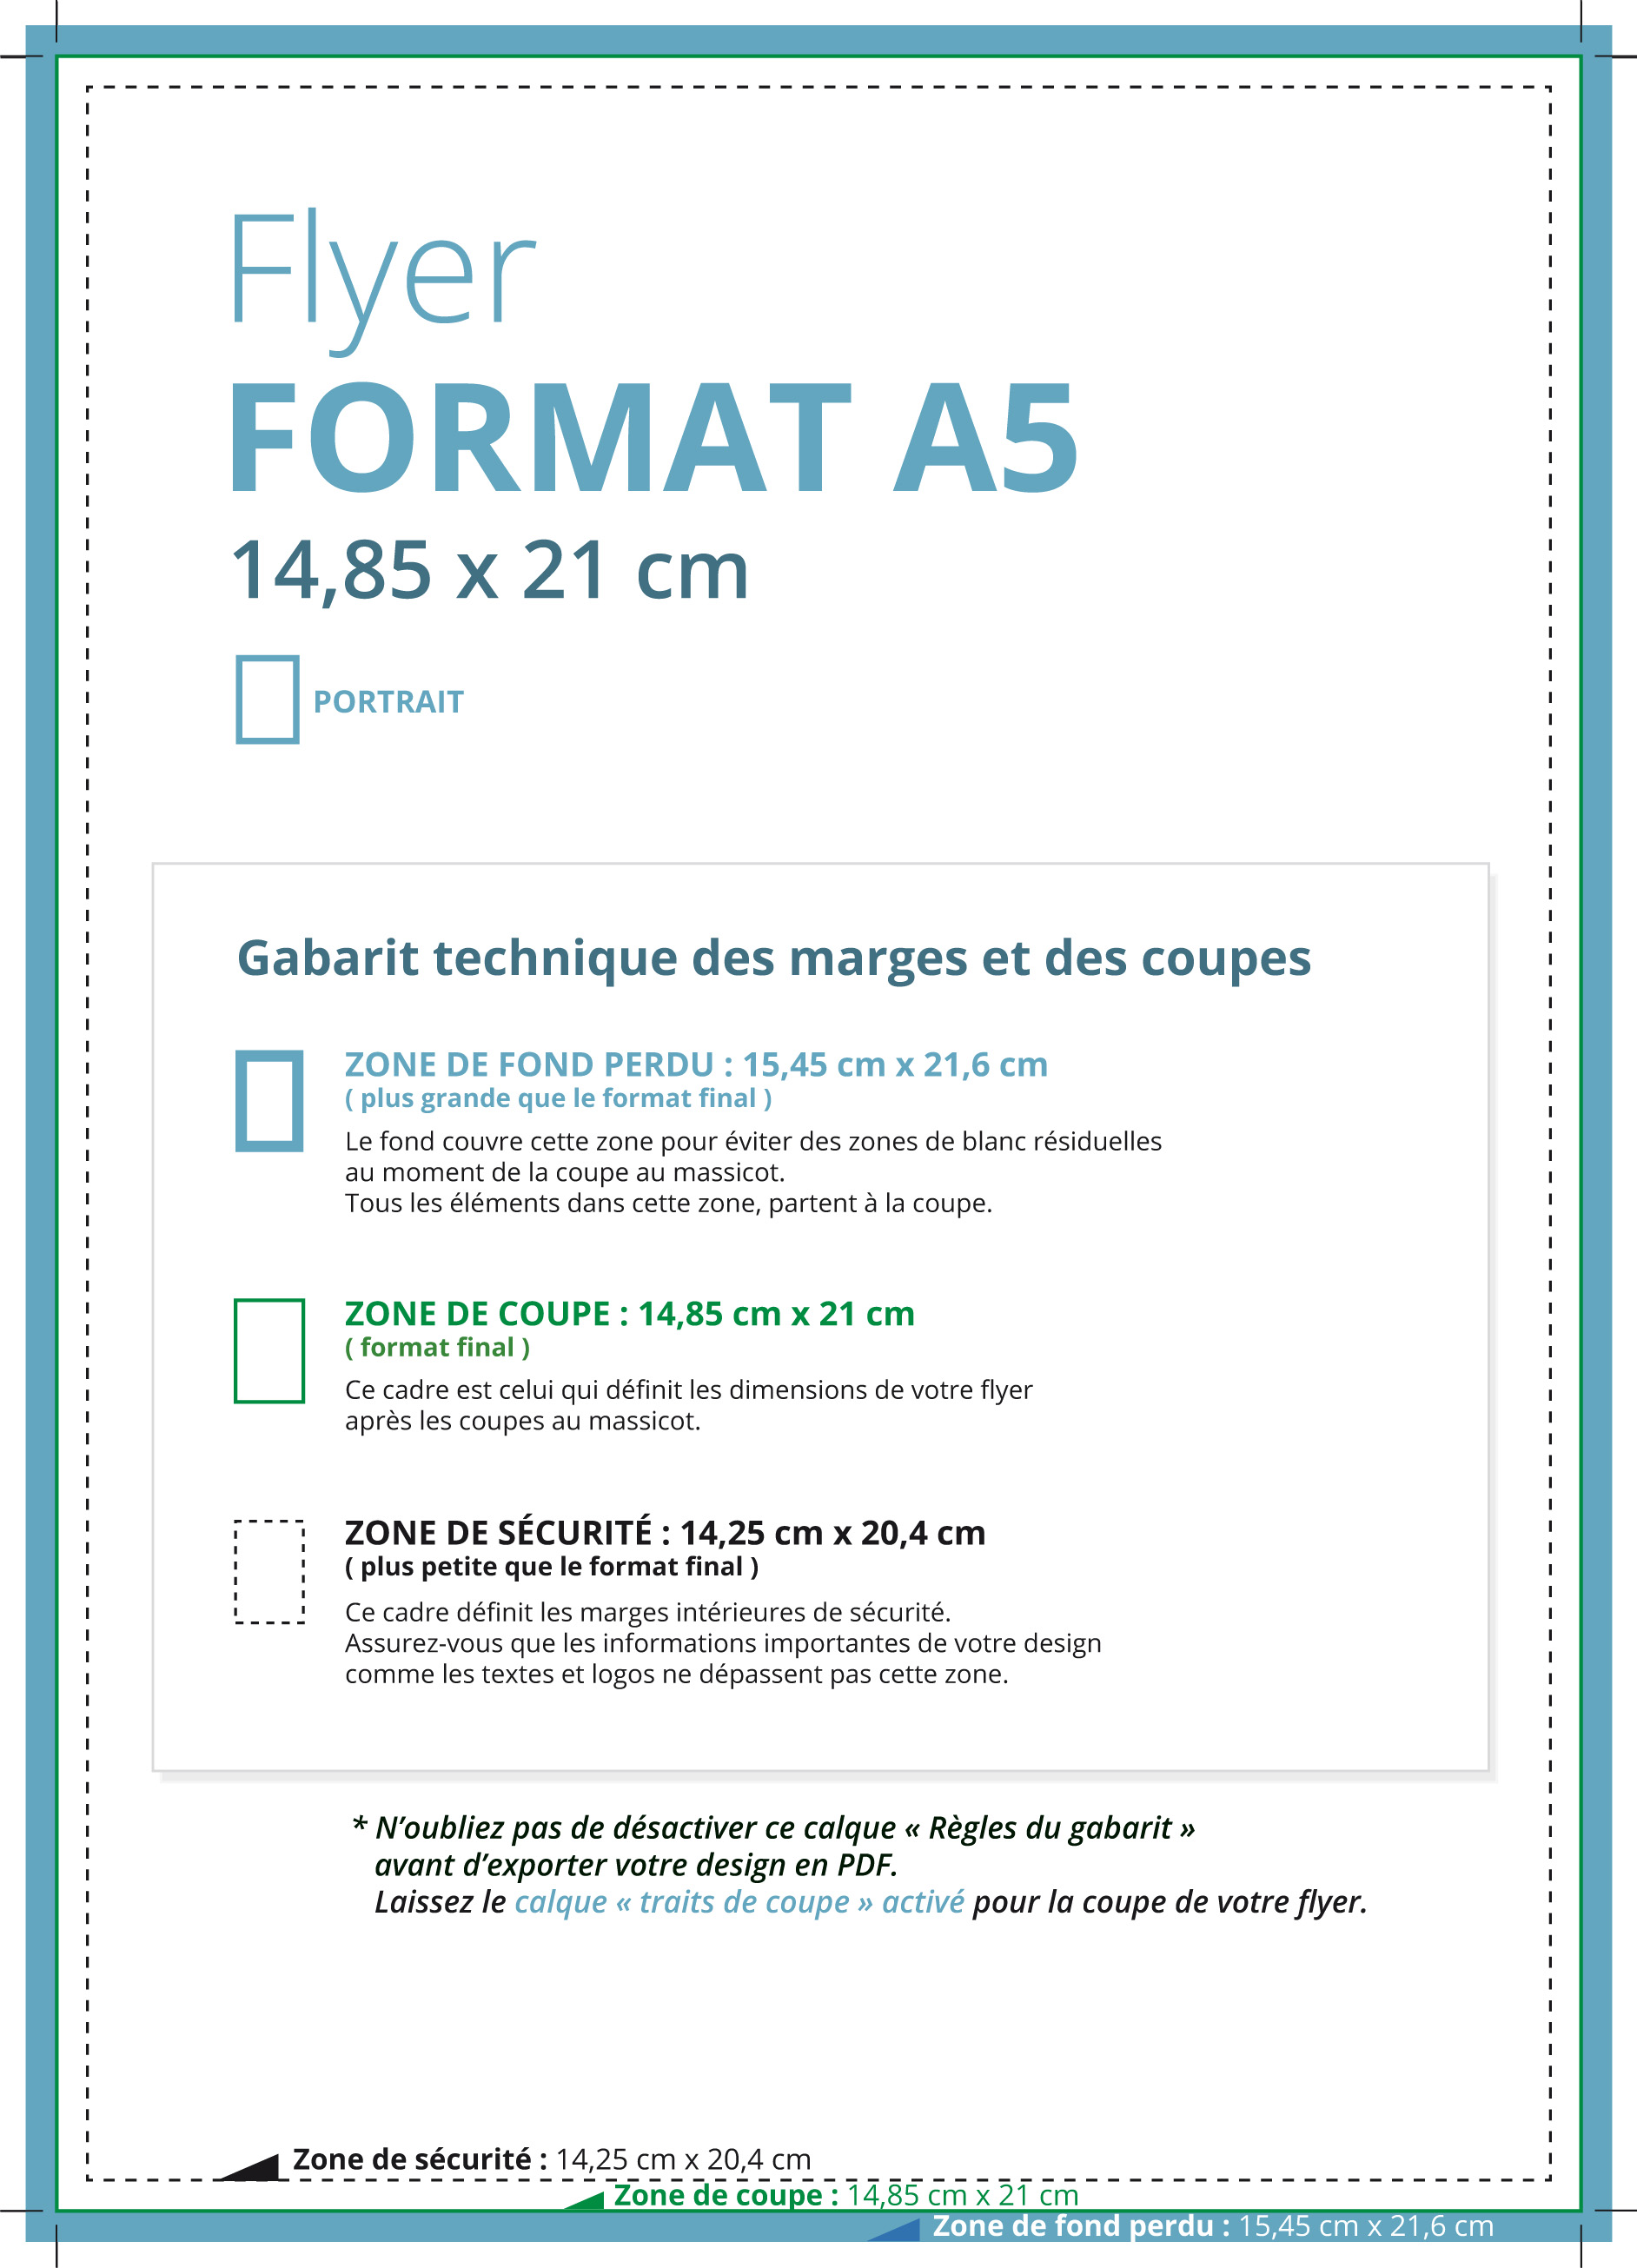 Format de papier A5 - Les informations sur le format des flyers